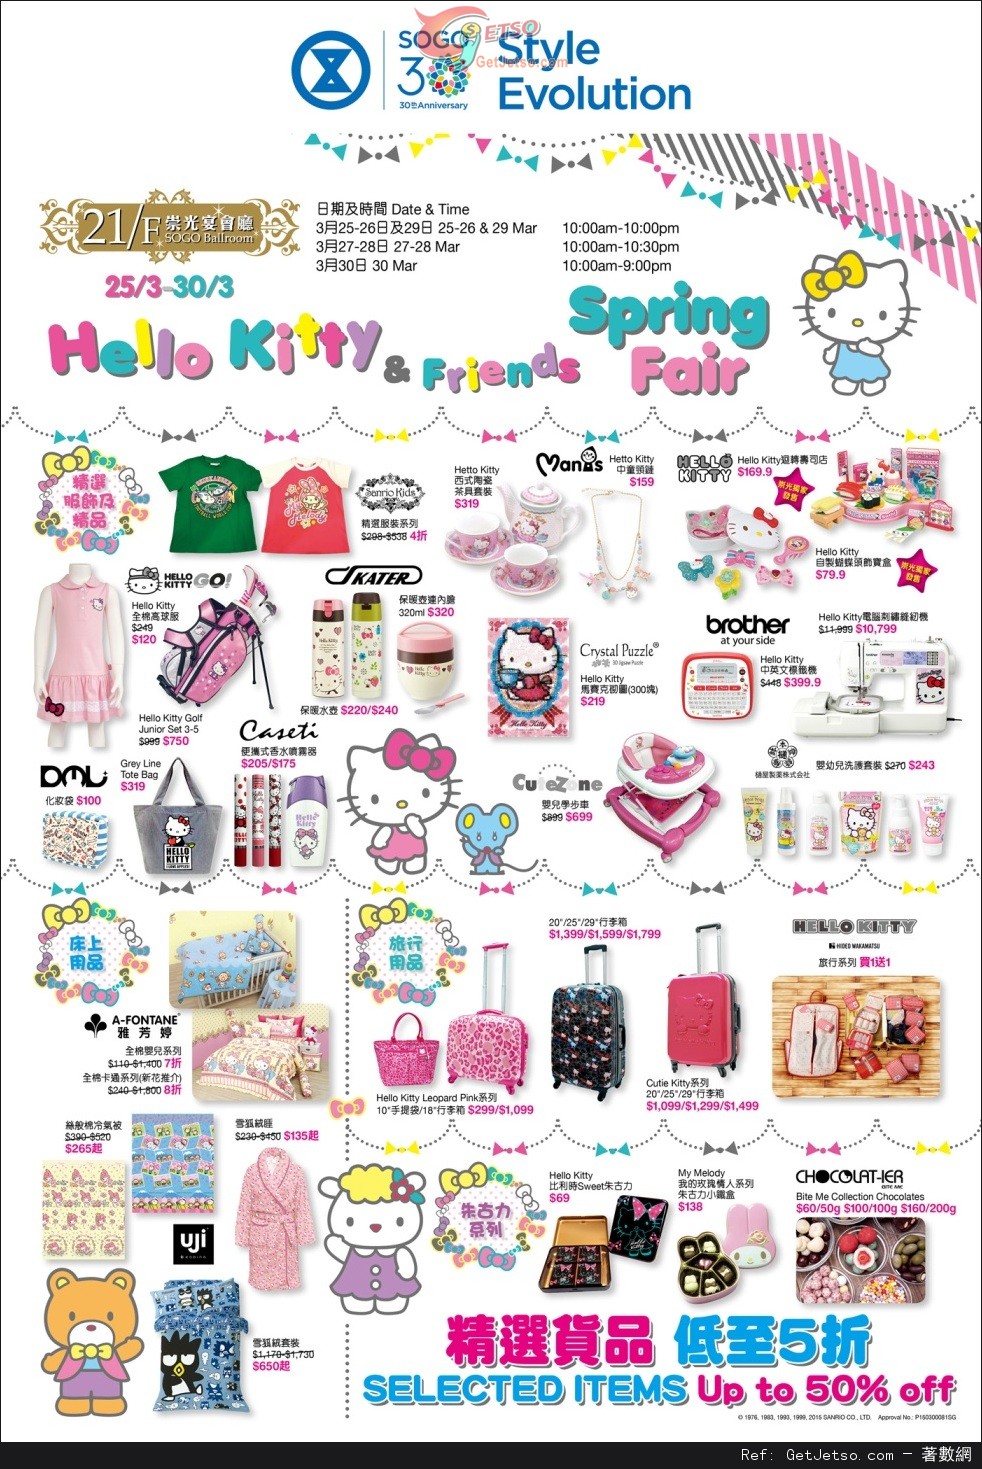 銅鑼灣崇光百貨家品爆倉大脫價及Hello Kitty and Friends Spring Fair購物優惠(至15年3月31日)圖片3